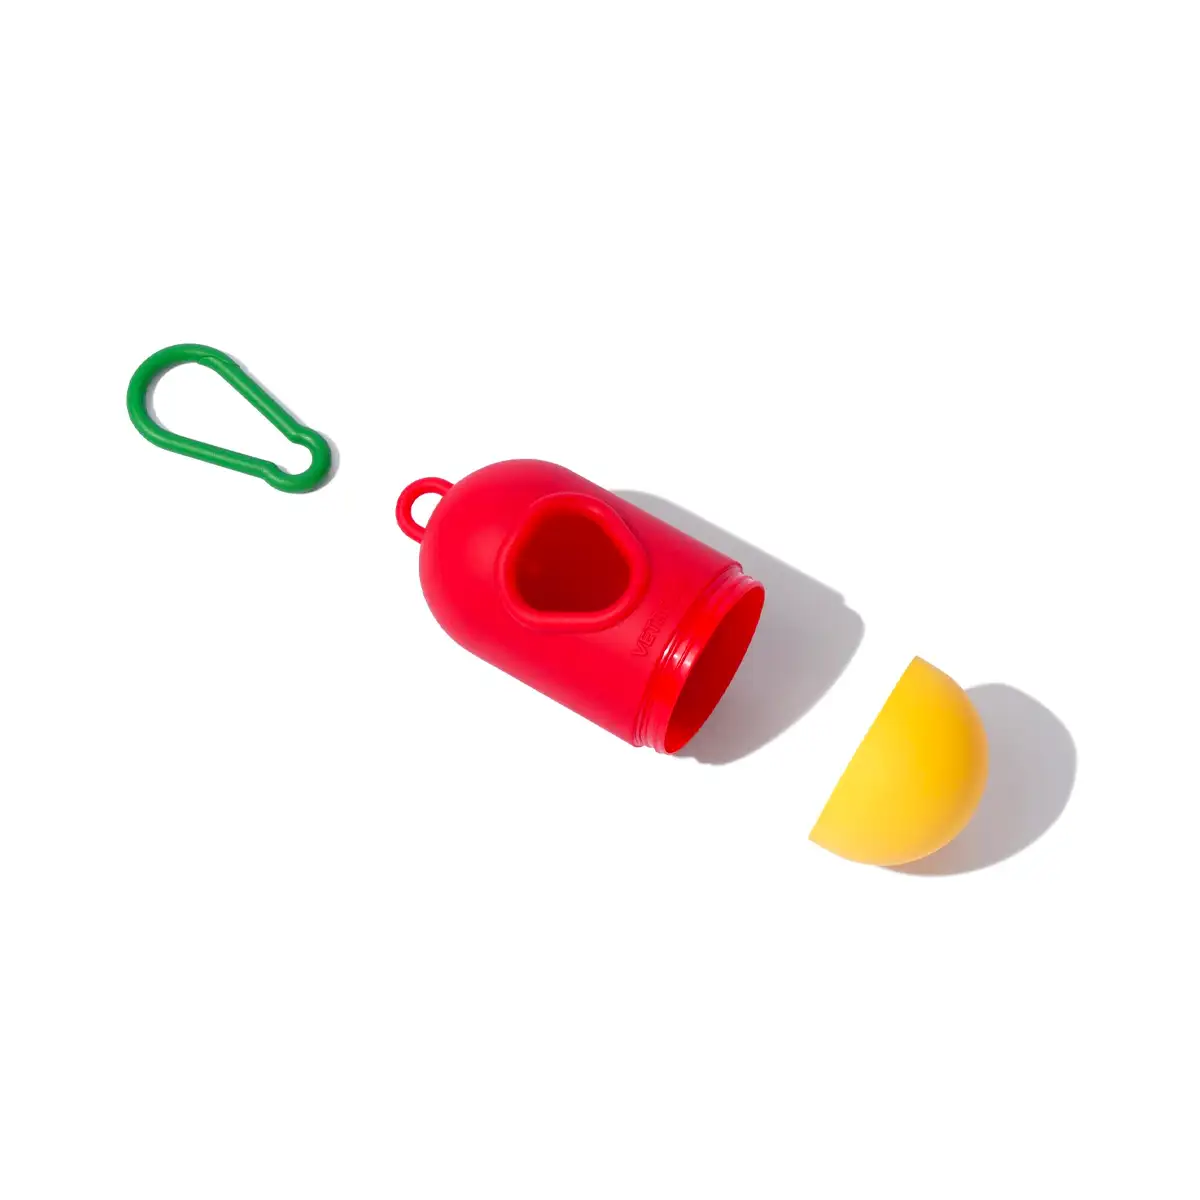 Vetreska - Chroma Pet Poop Bag Dispenser Set (Red)